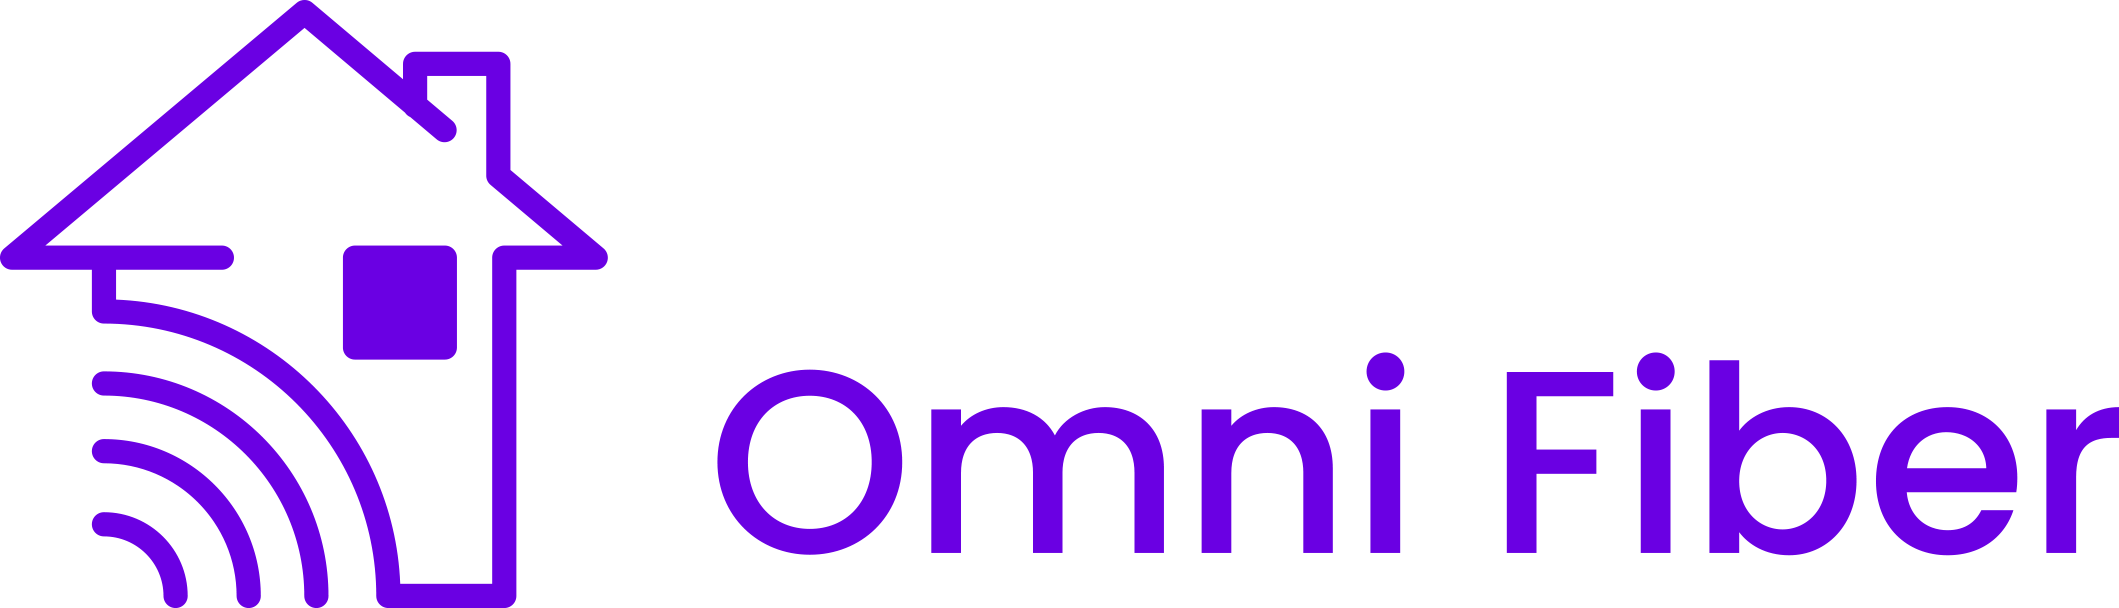 OmniFiber_Logo_RGB-1